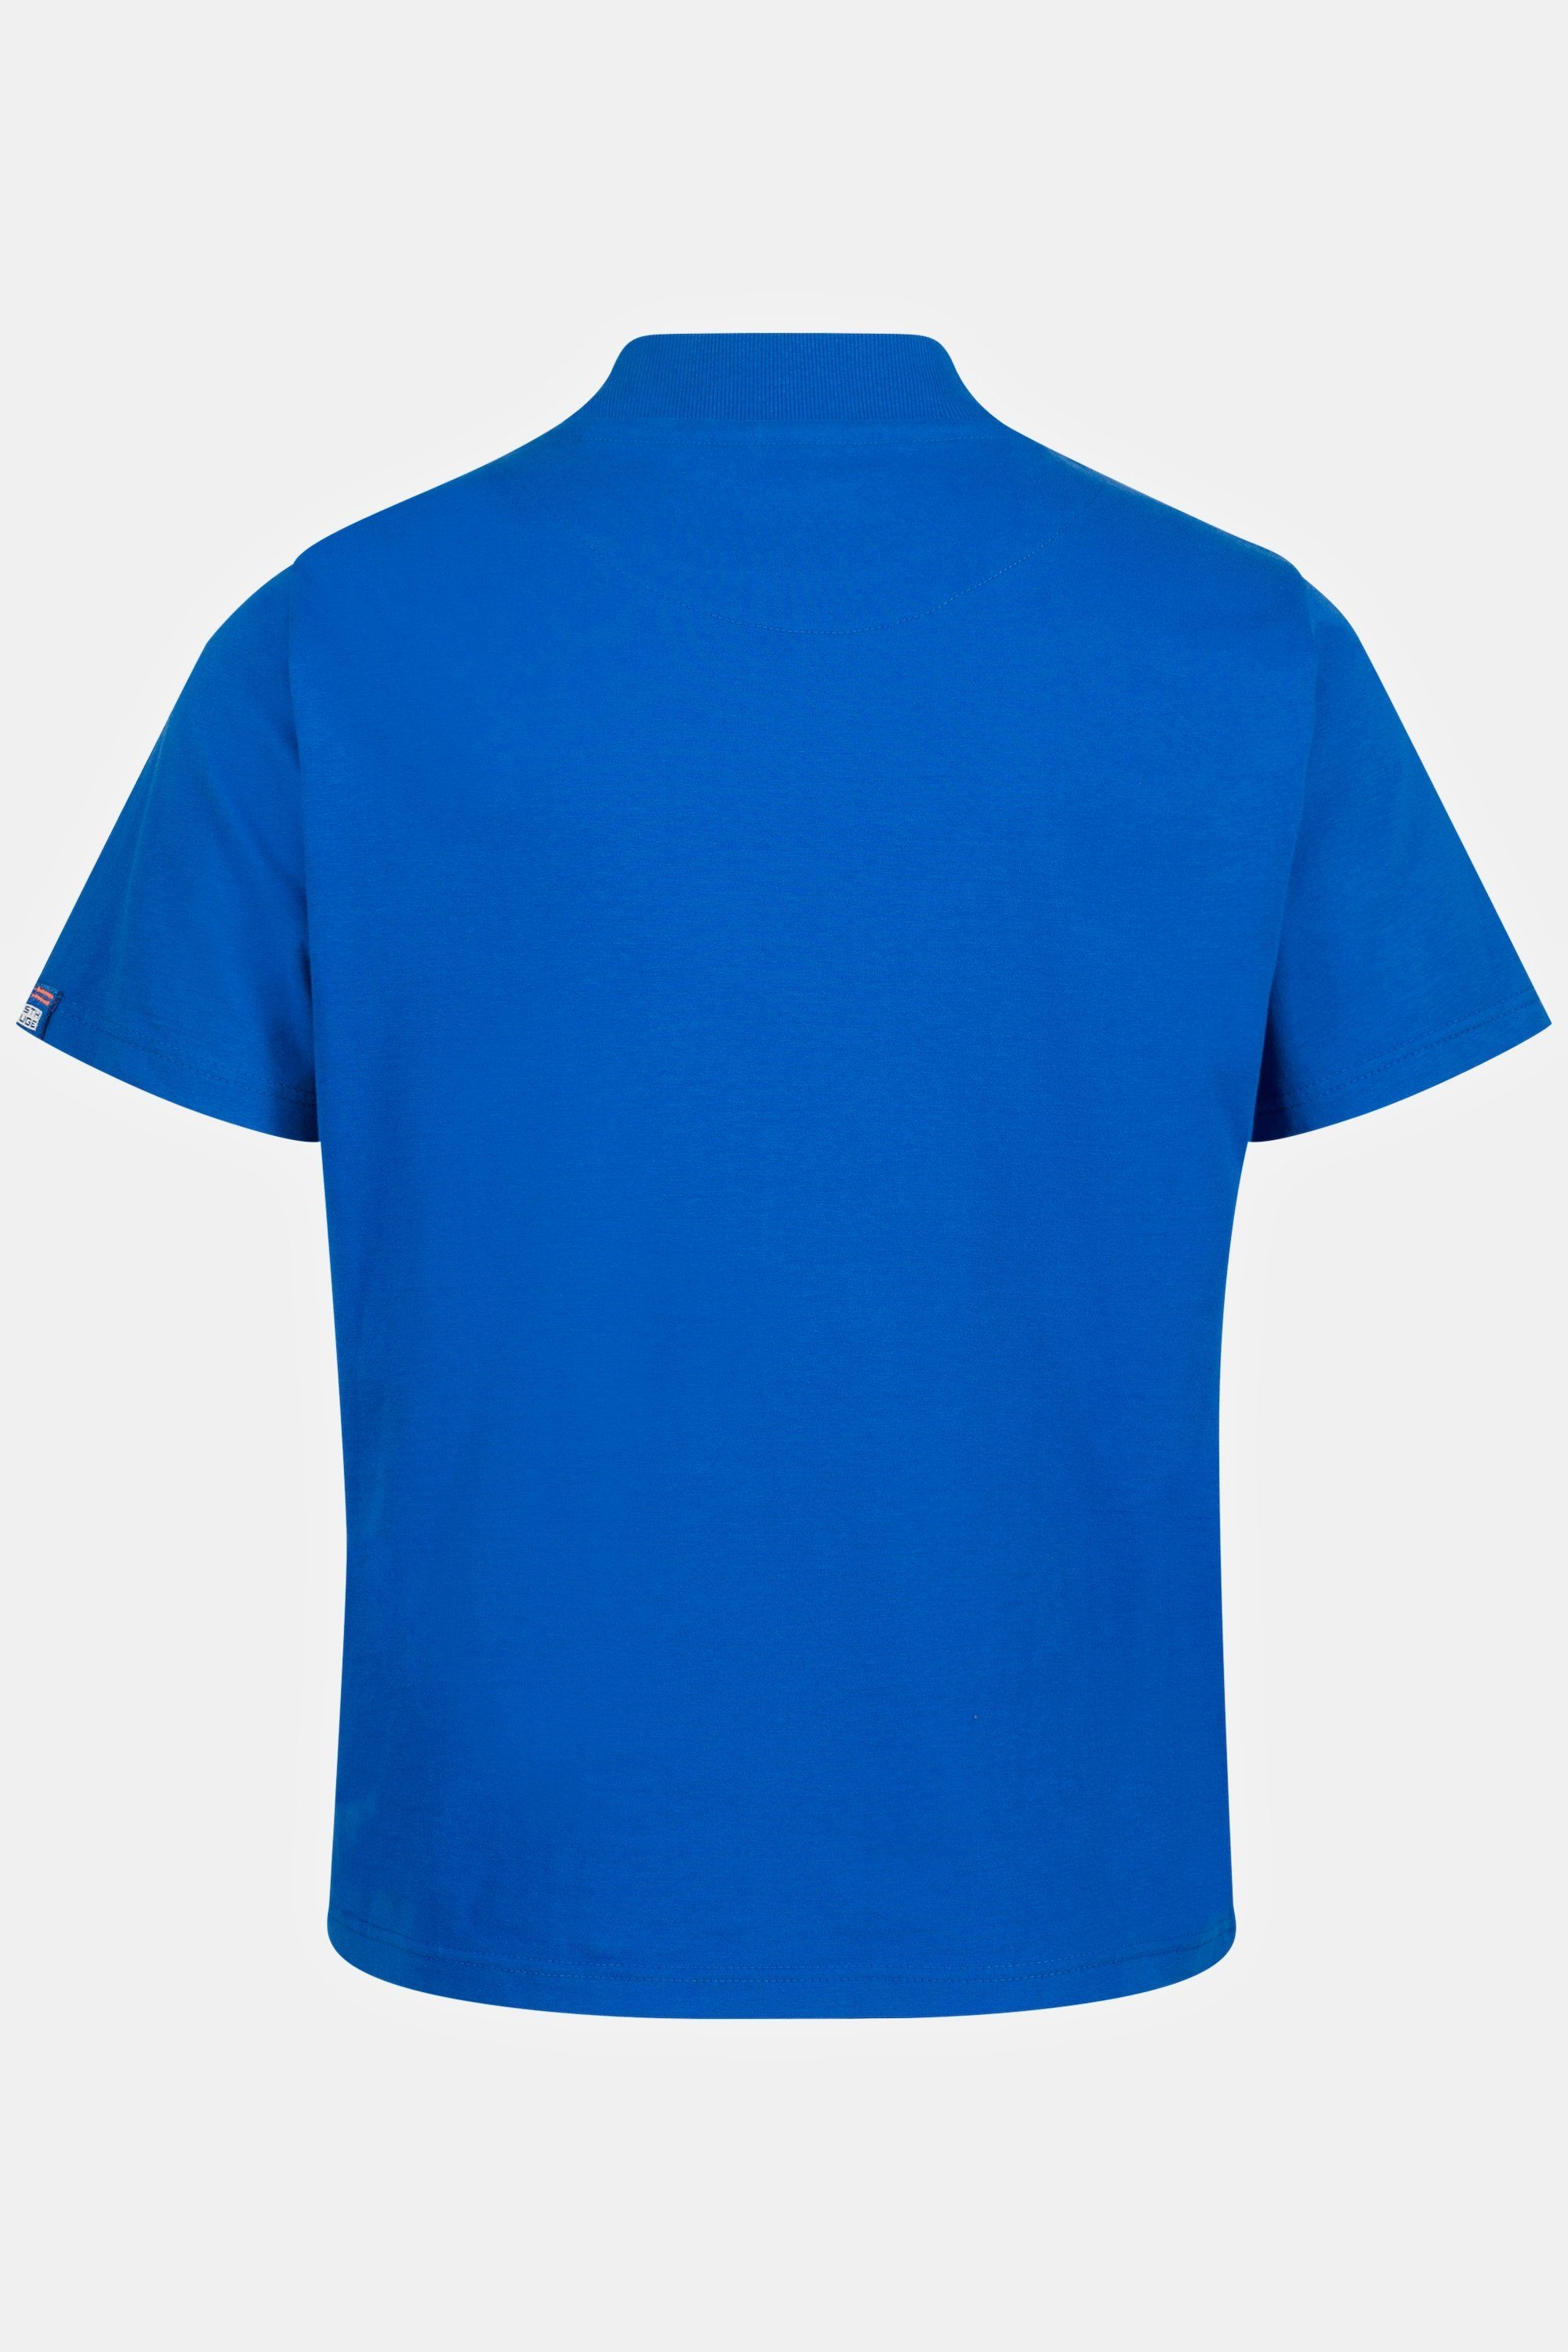 XL bis T-Shirt 8 T-Shirt STHUGE blau Halbarm STHUGE Stehkragen